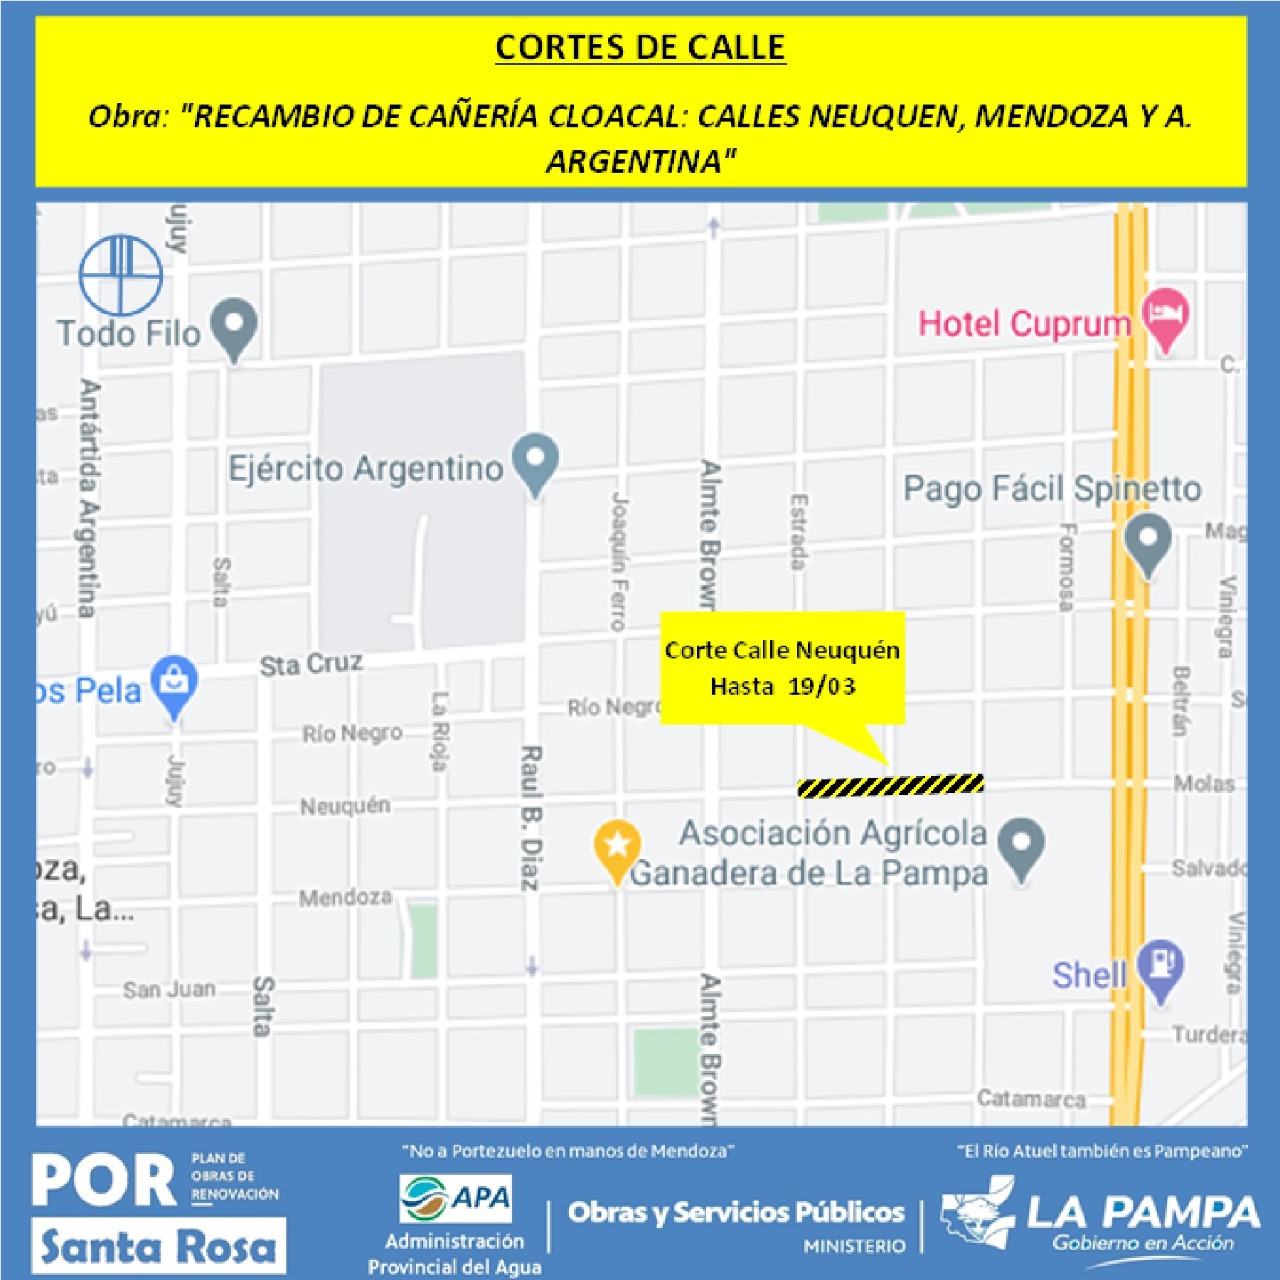  Actualizan el mapa de interrupciones al tránsito en calles de Santa Rosa